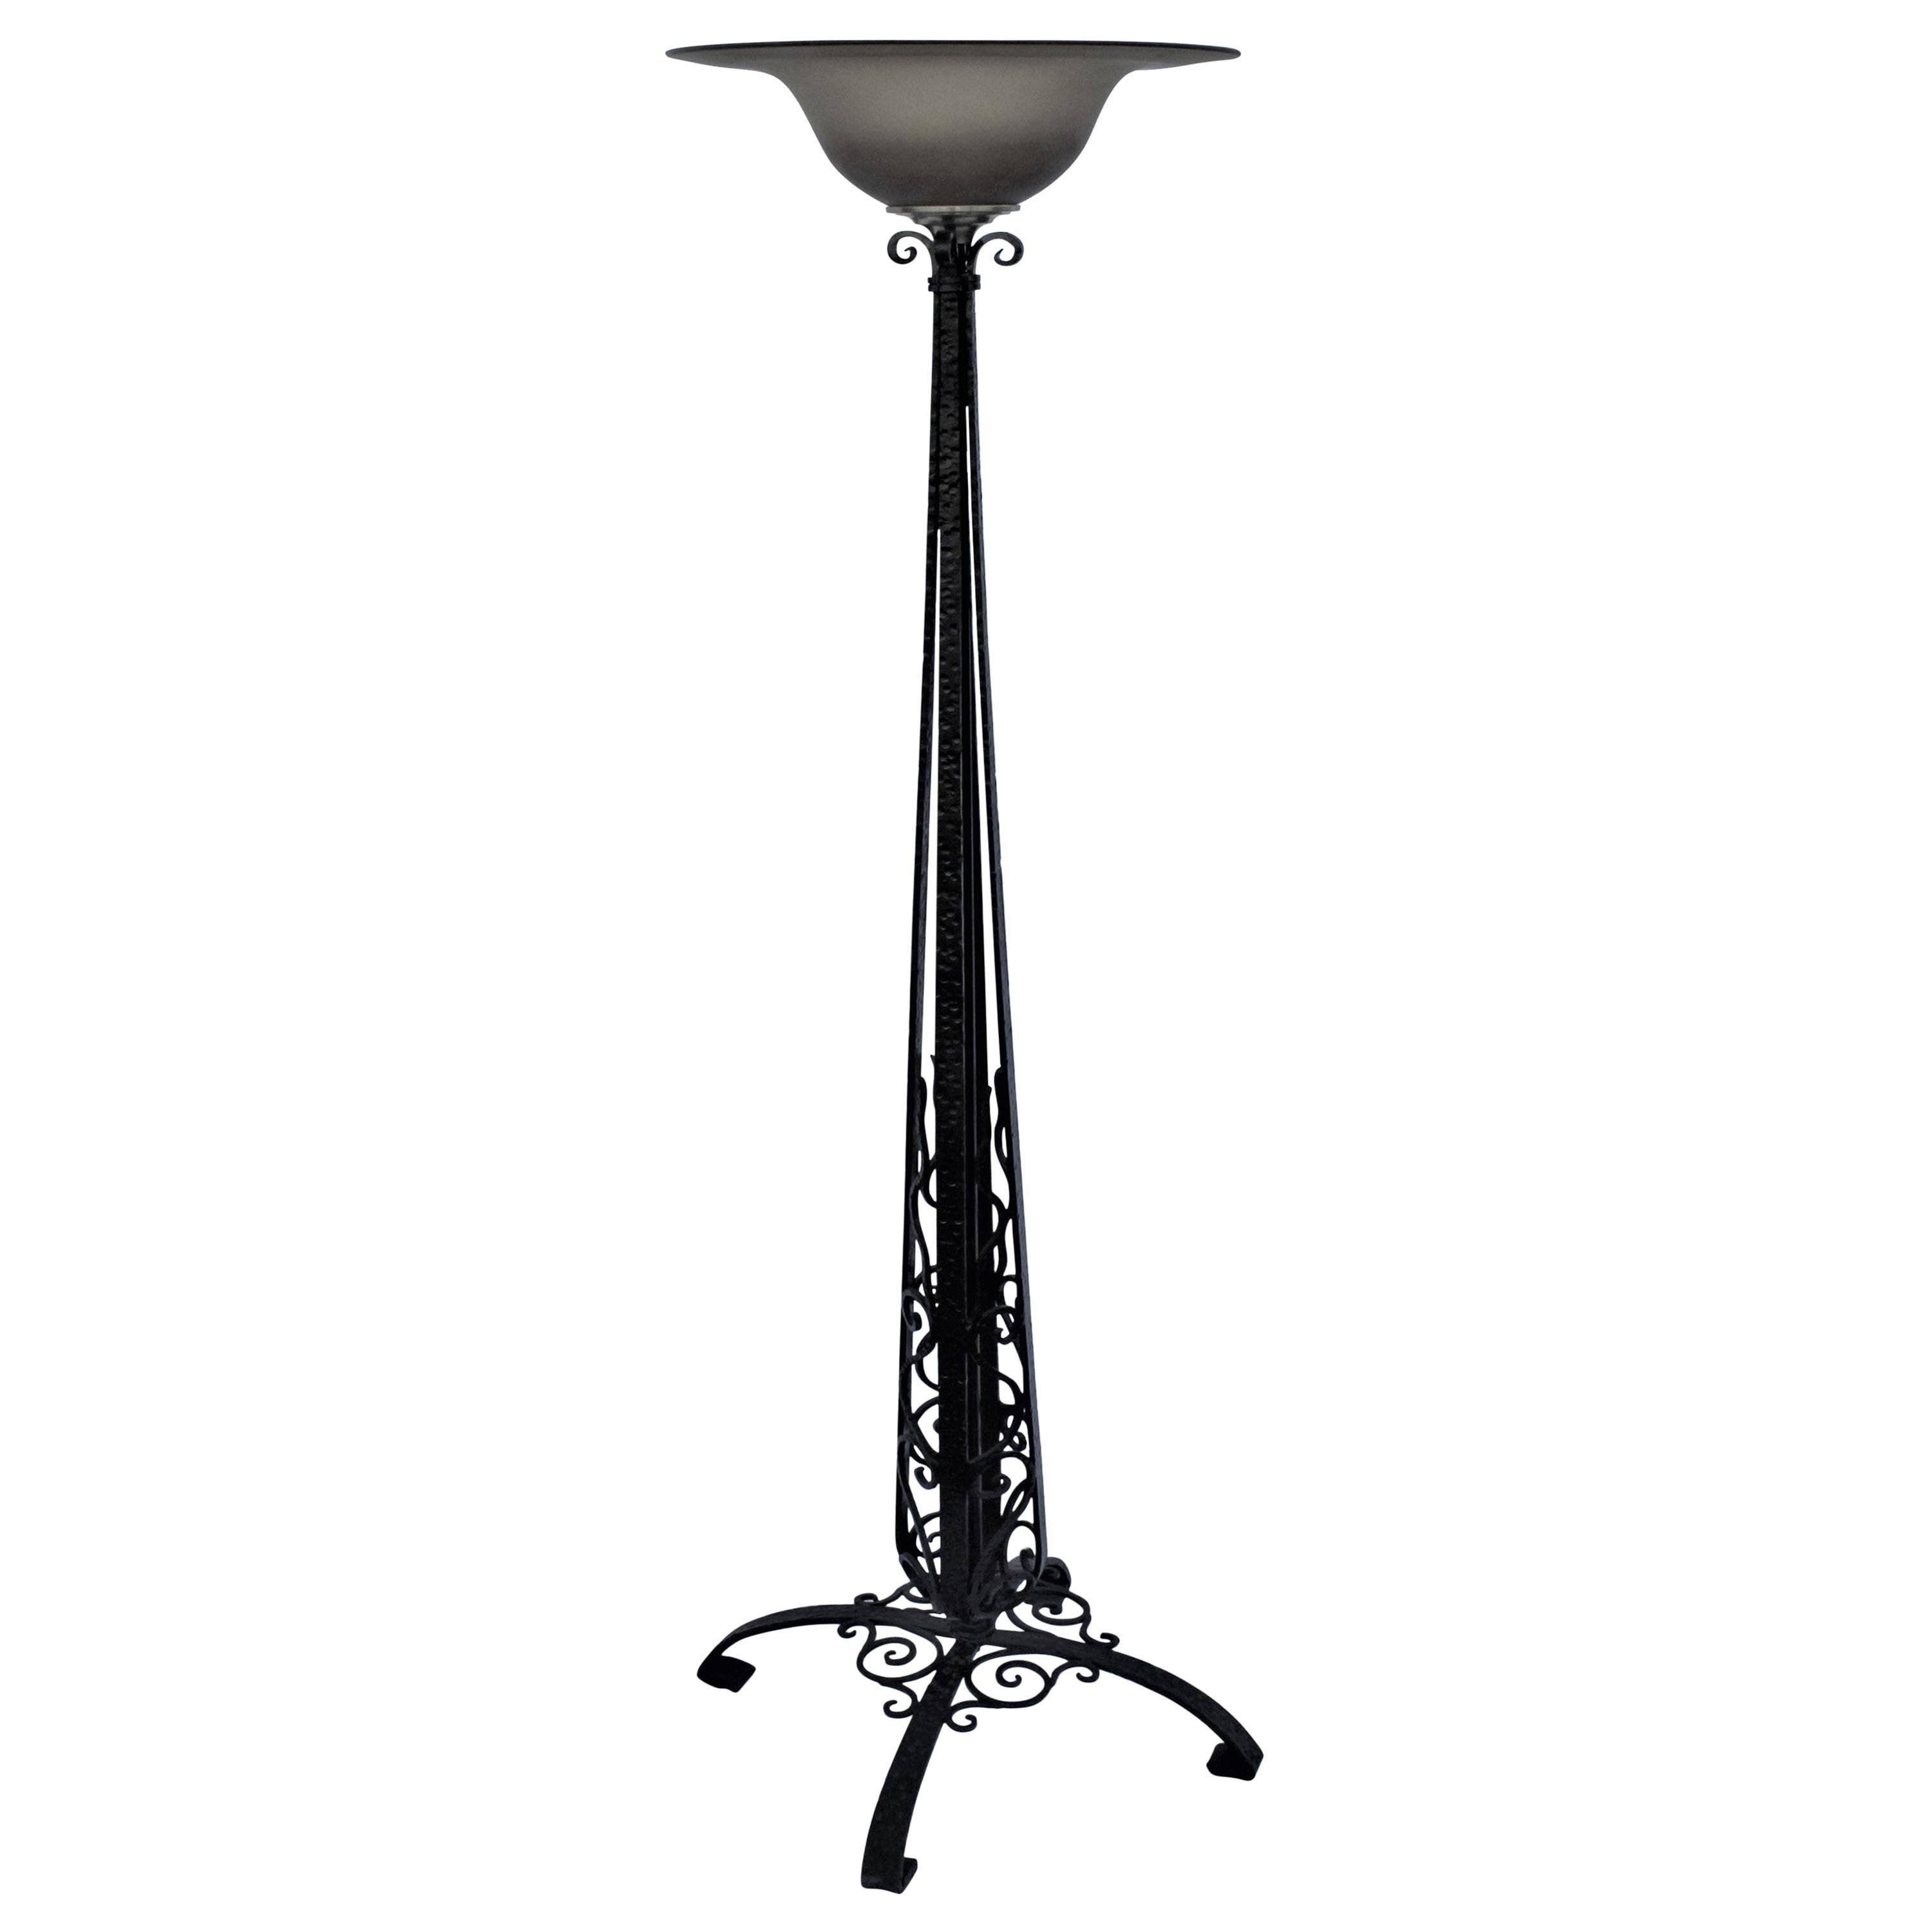 Art Deco/Modern Design Stehlampe, handgeschmiedet, bernsteinfarbener Glasschirm, schwarz lackiert